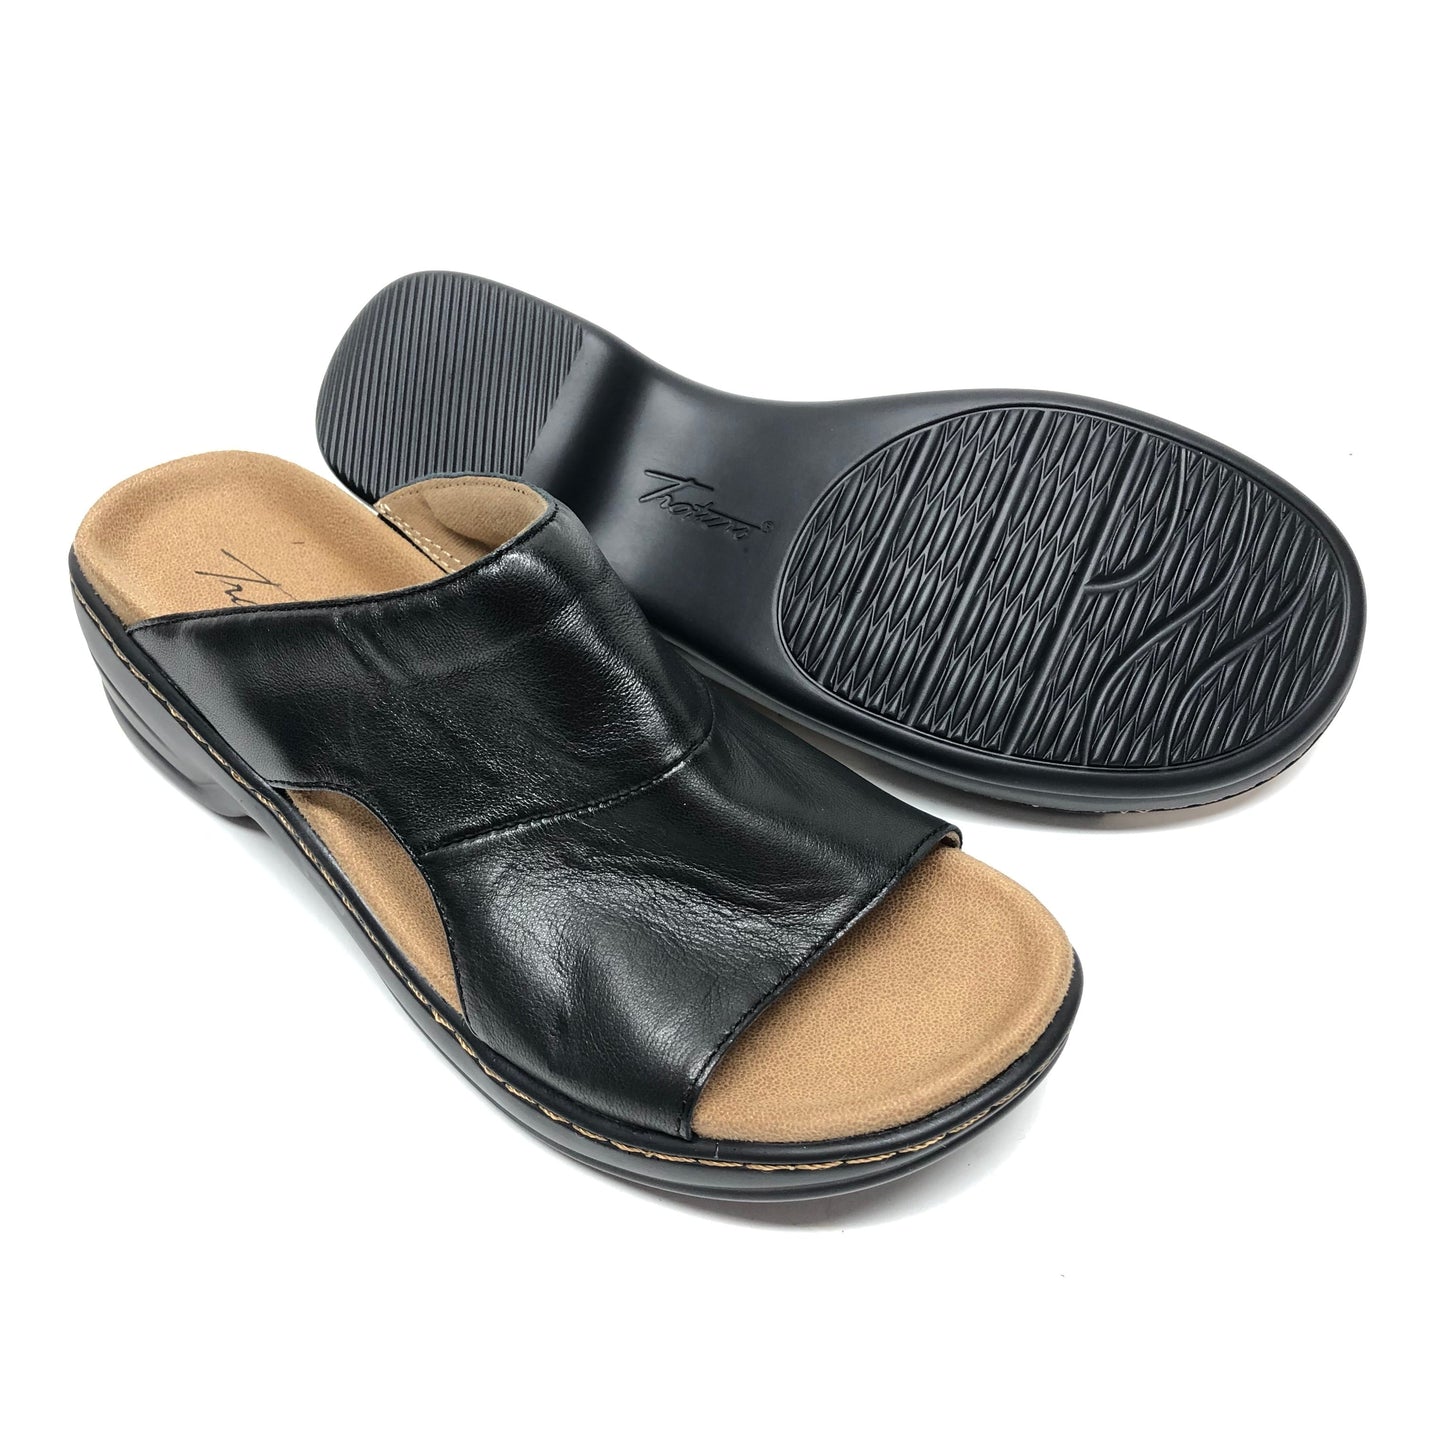 Black Sandals Flats Cmb, Size 6.5